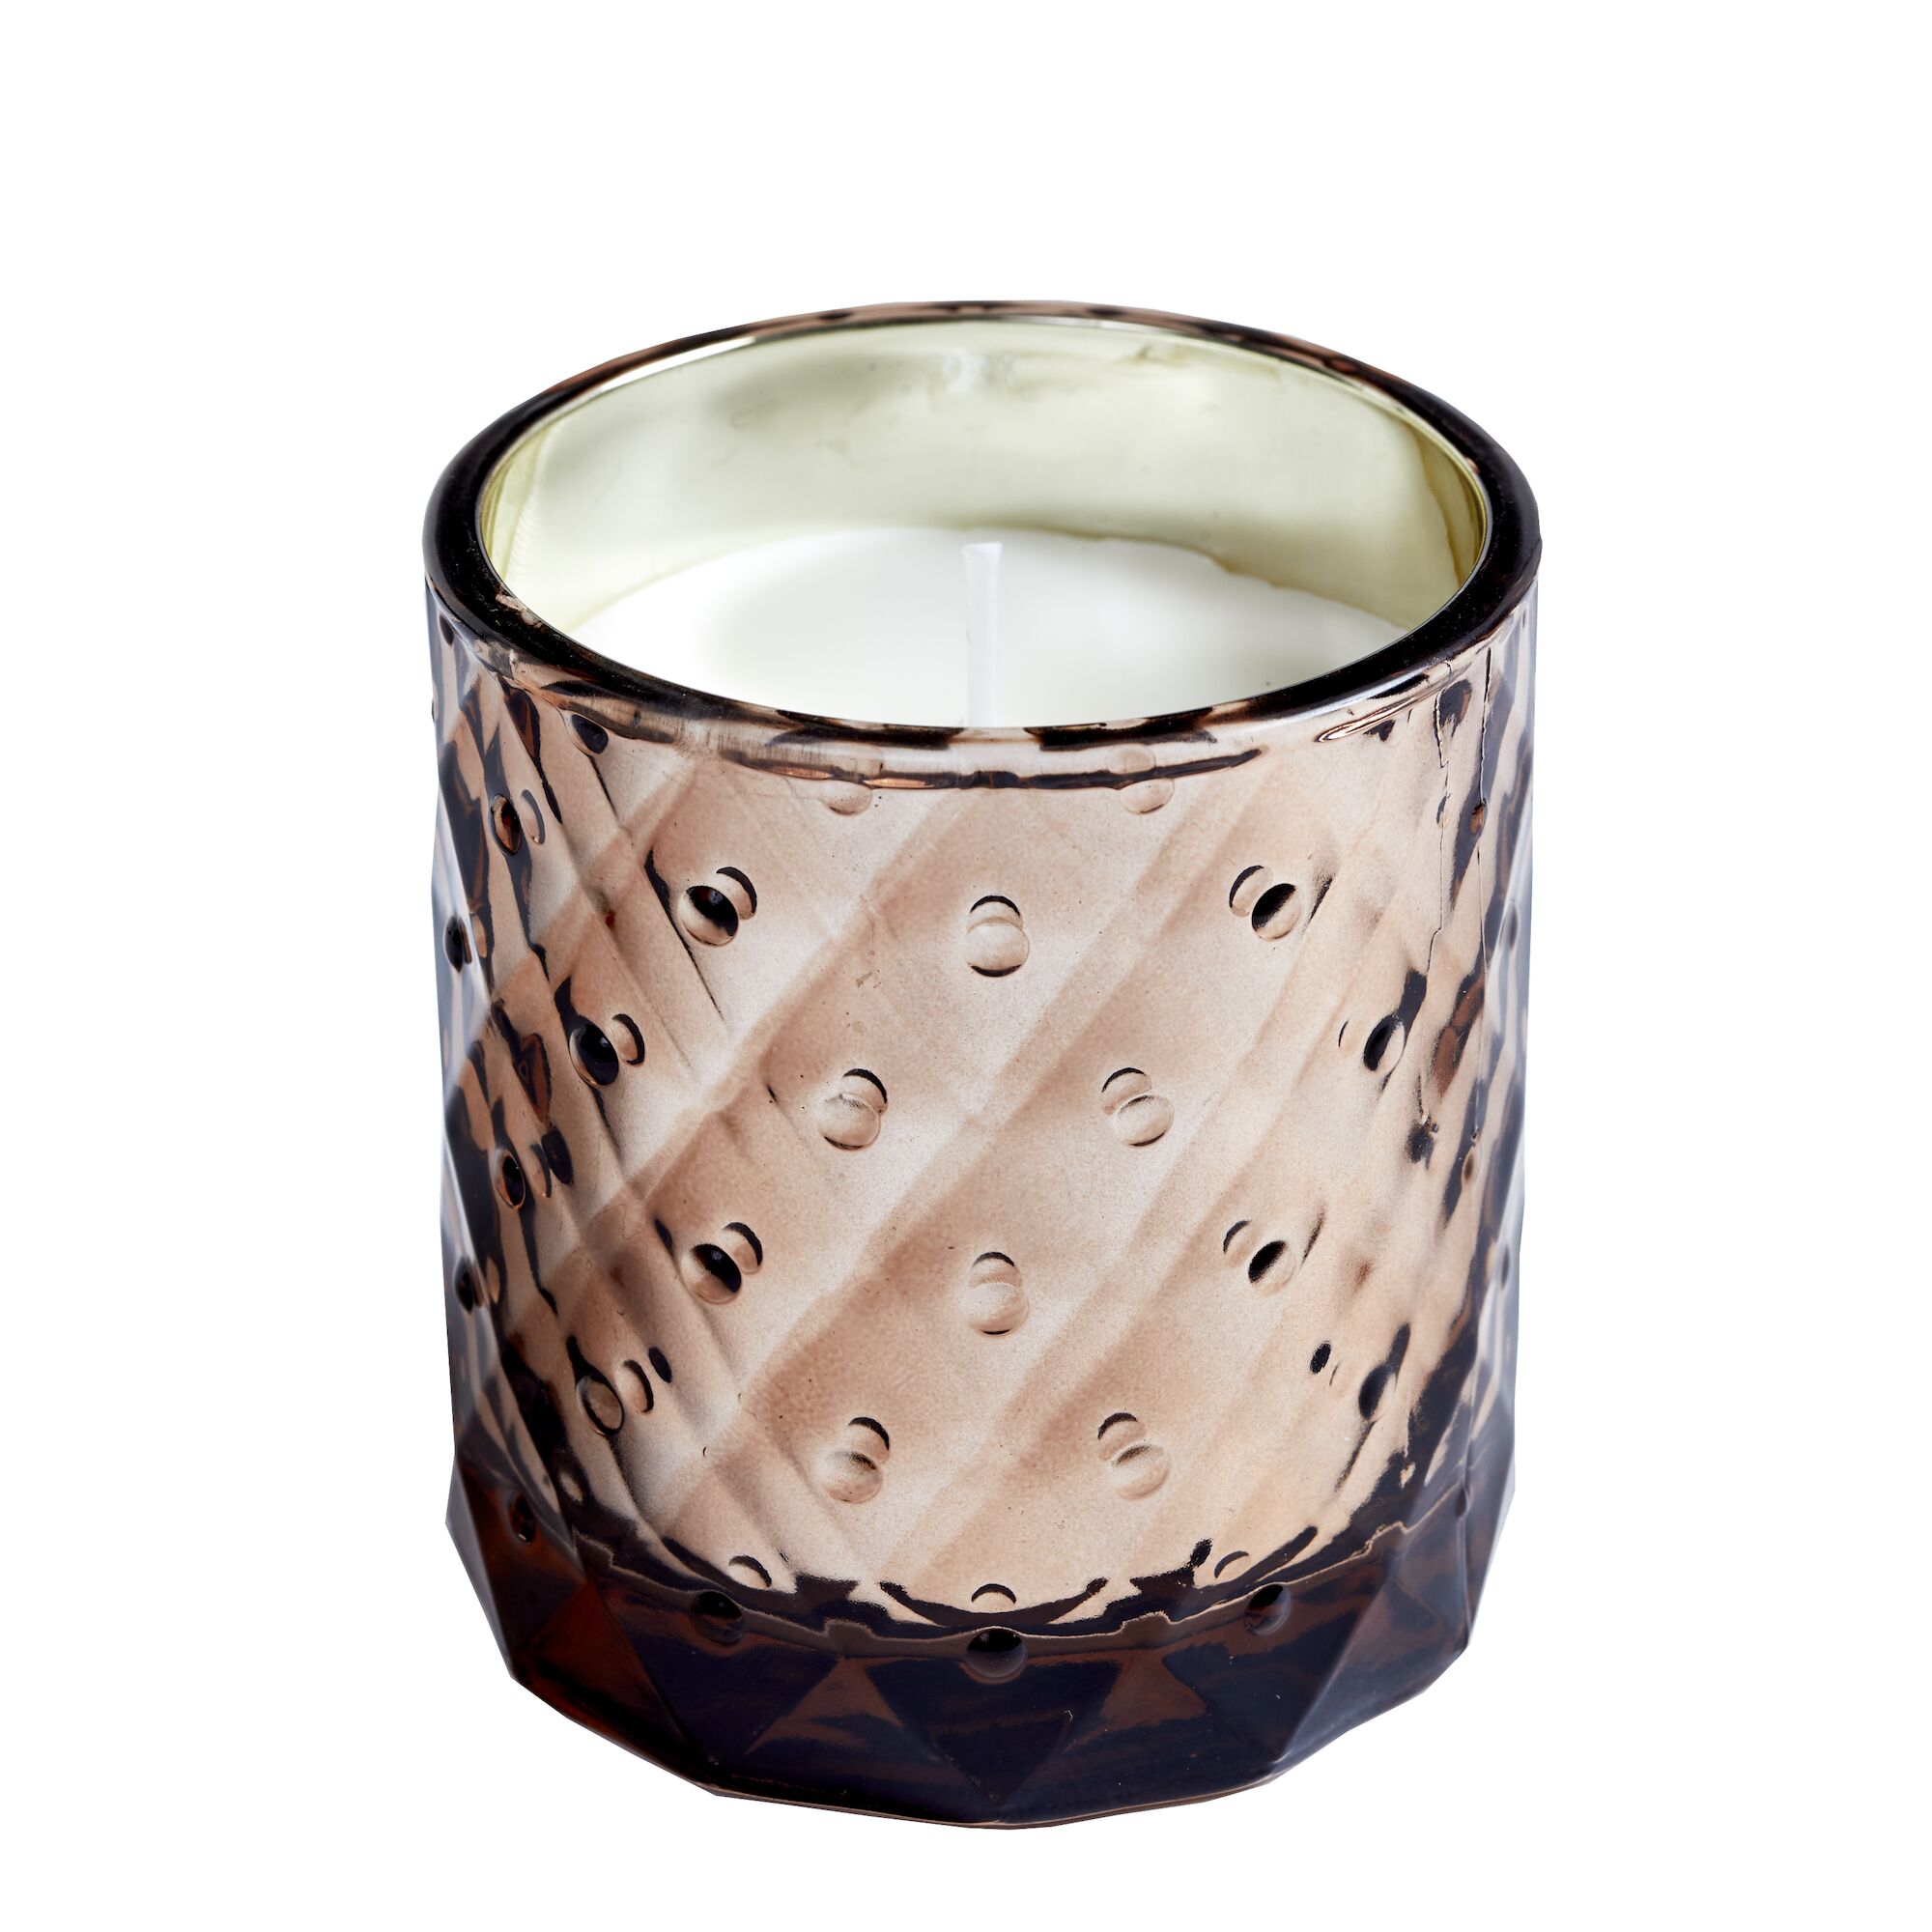 SPAAS Geruchlose Kerze im Bronze-strukturierten Glas, ± 25 Stunden